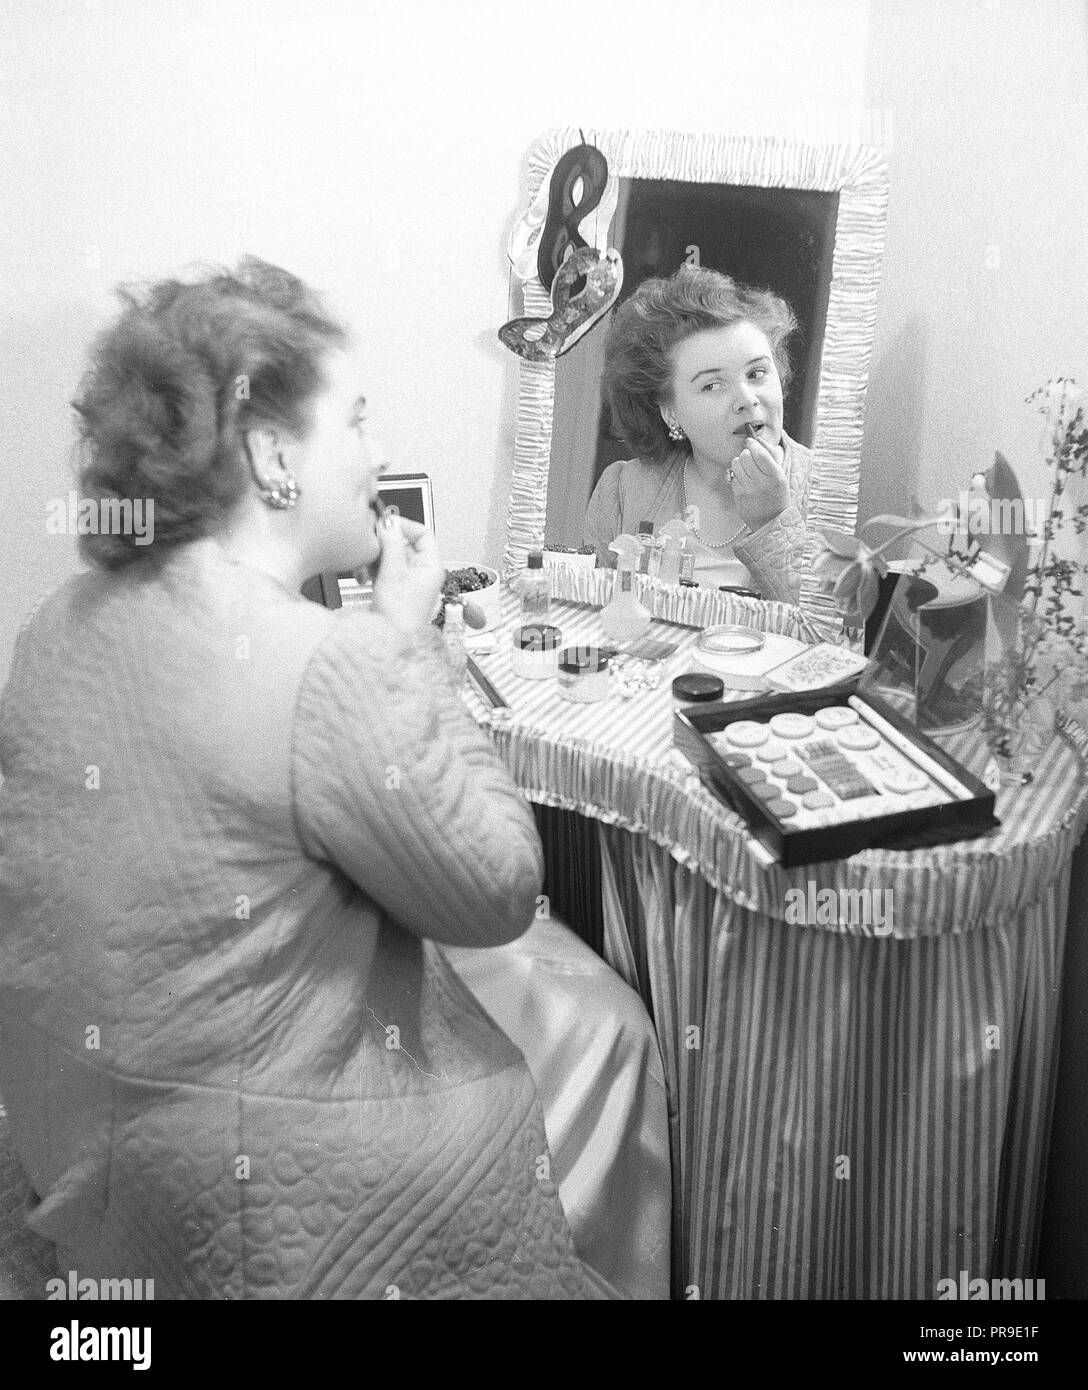 Lugar De Maquillaje De La Mujer Con Espejo Y Focos En El Estudio  Fotográfico De Loft Interior De La Pared De Ladrillo Negro. Fotos,  retratos, imágenes y fotografía de archivo libres de